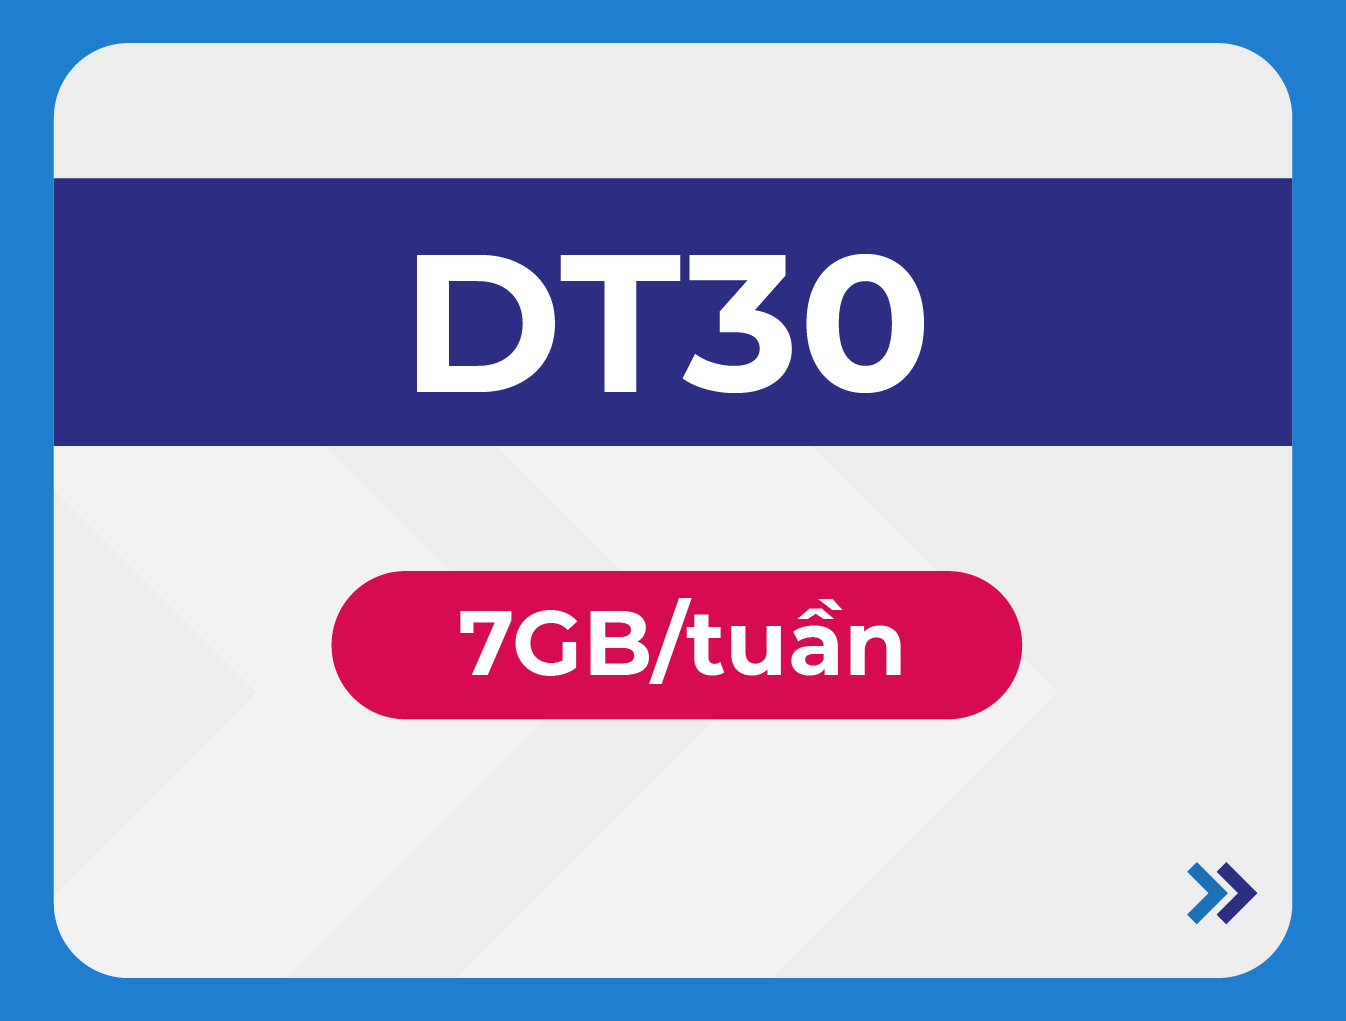 DT30